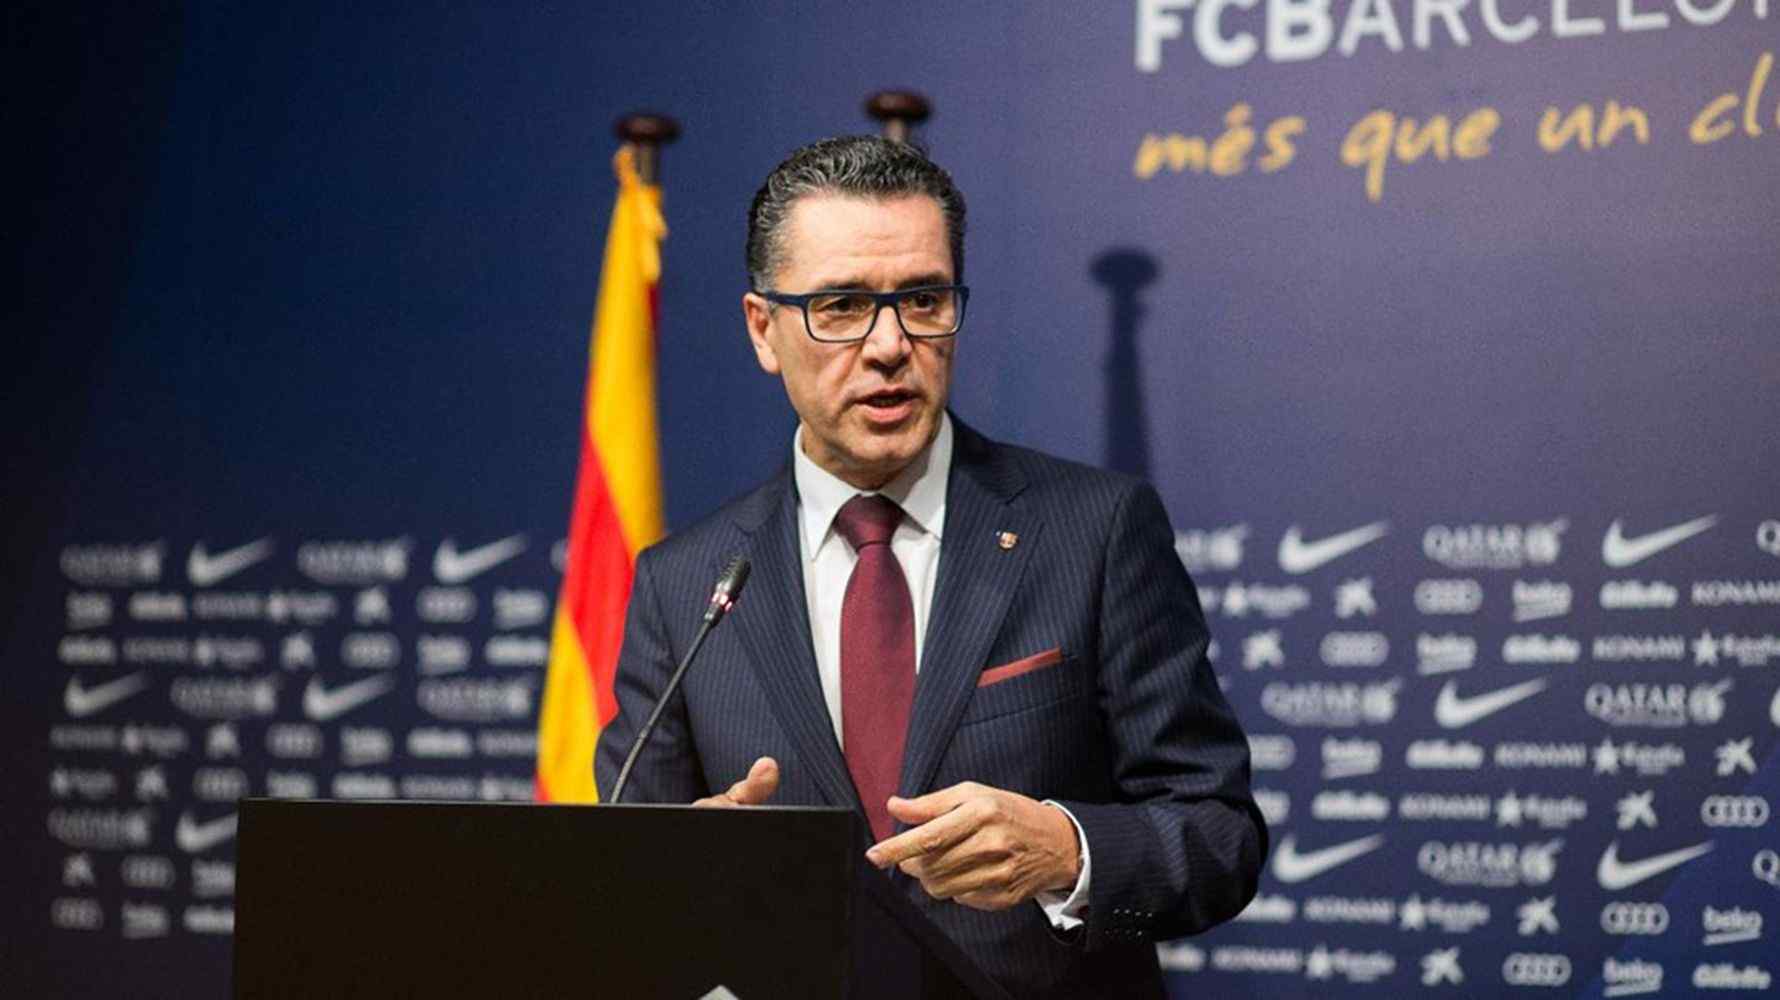 El Barça afirma que podría llegar al Tribunal Supremo en la acción de responsabilidad